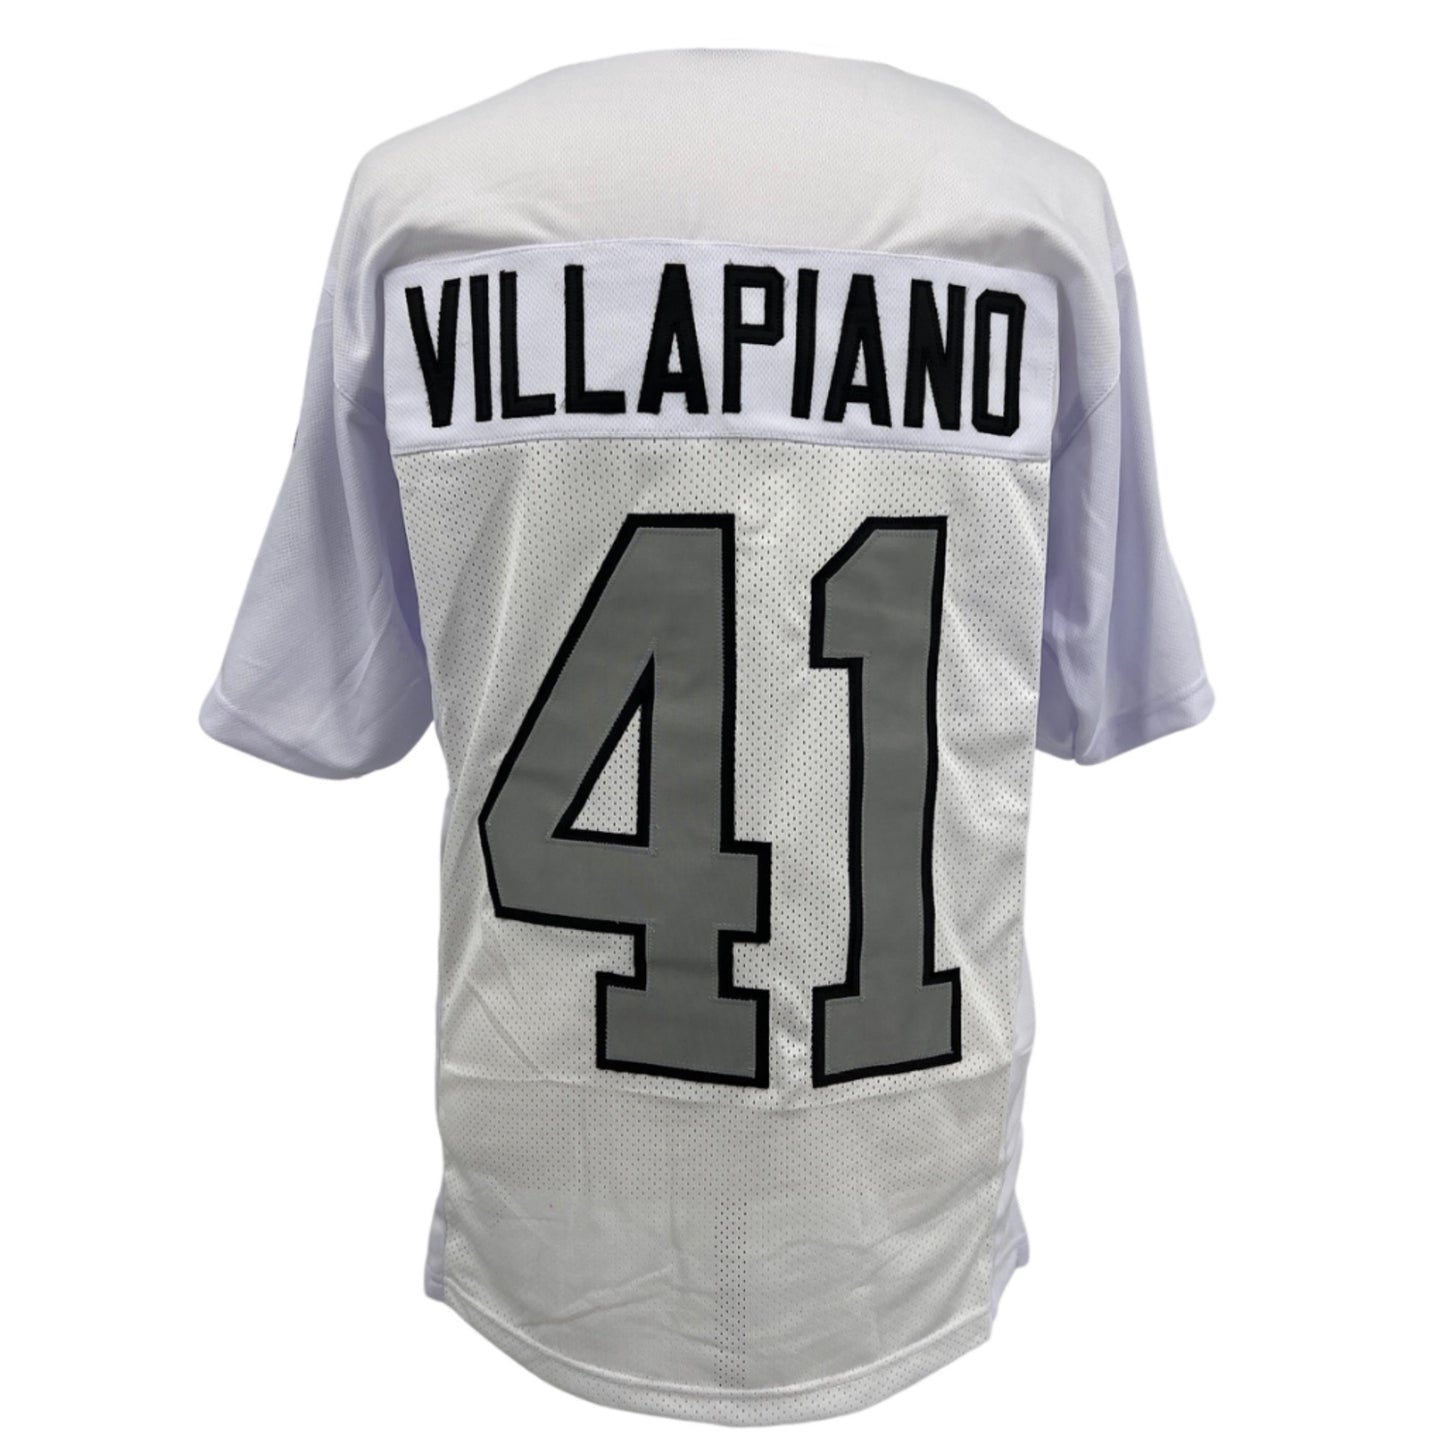 Phil Villapiano Jersey White Oakland S/B M-5XL Sewn Stitched